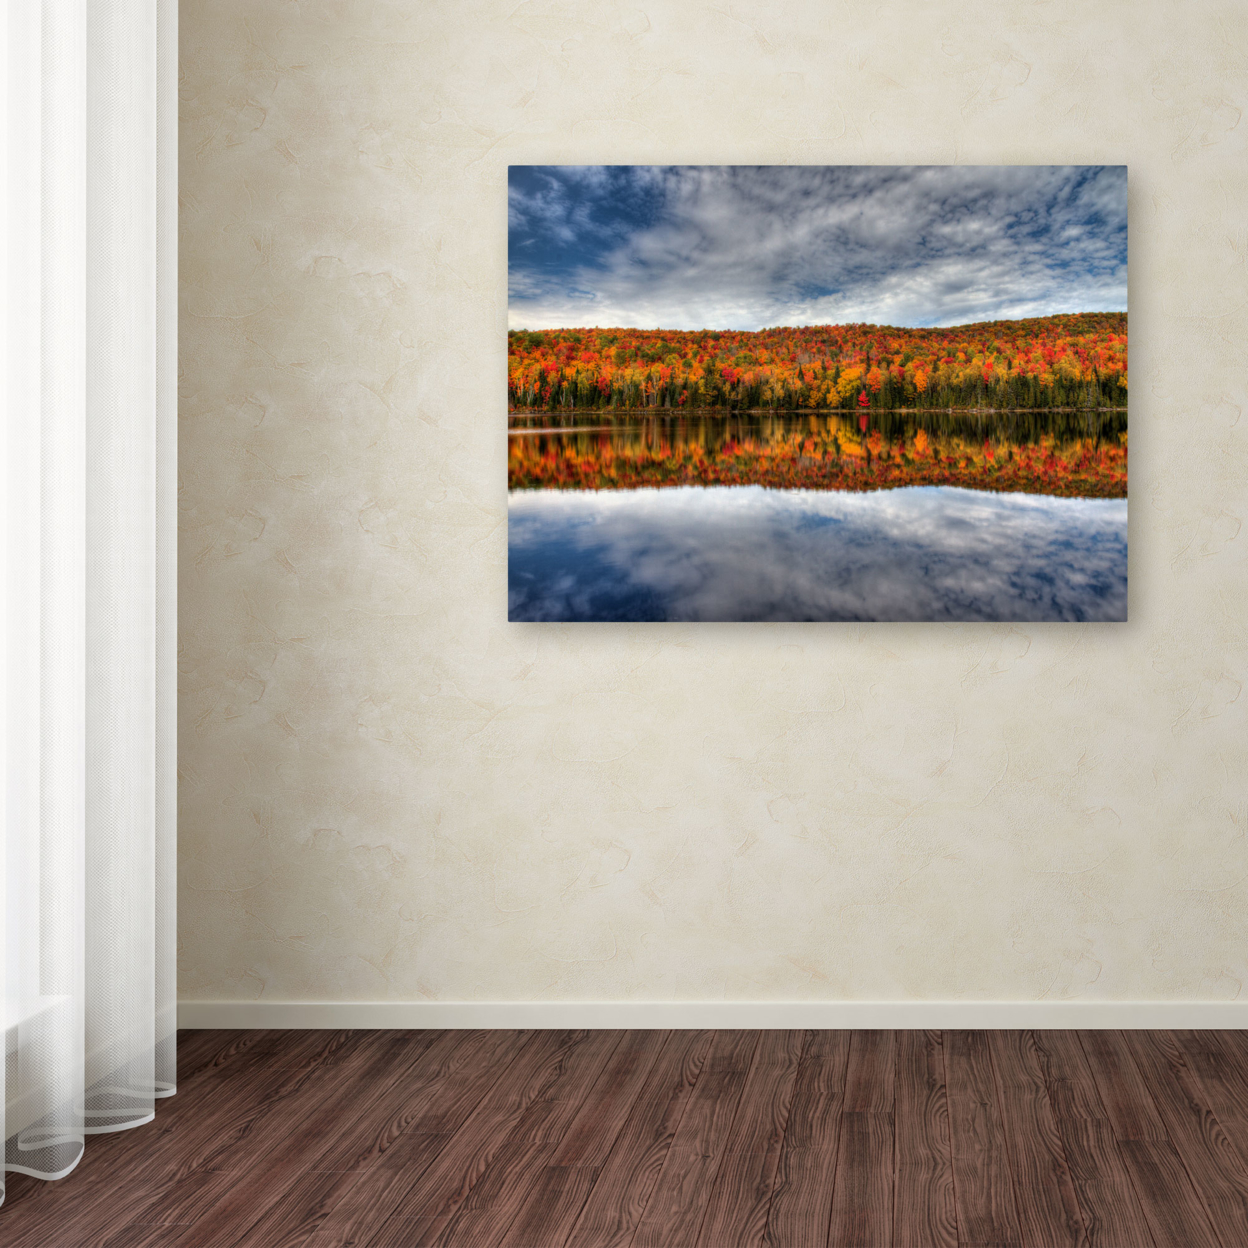 Pierre Leclerc 'Autumn Reflection' Canvas Art 16 X 24